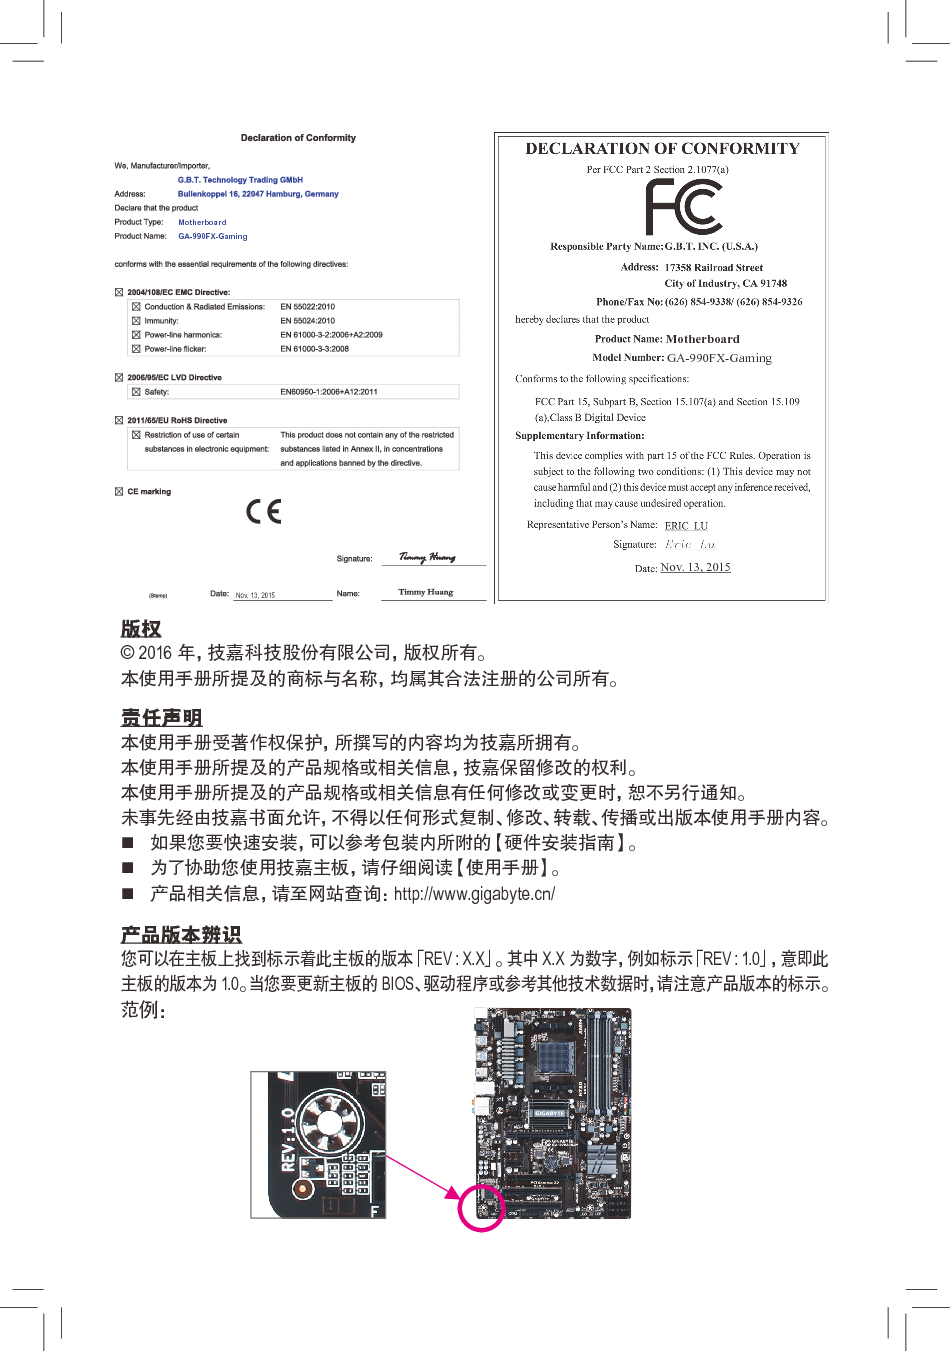 技嘉 Gigabyte GA-990FX-Gaming 1002版 使用手册 第1页